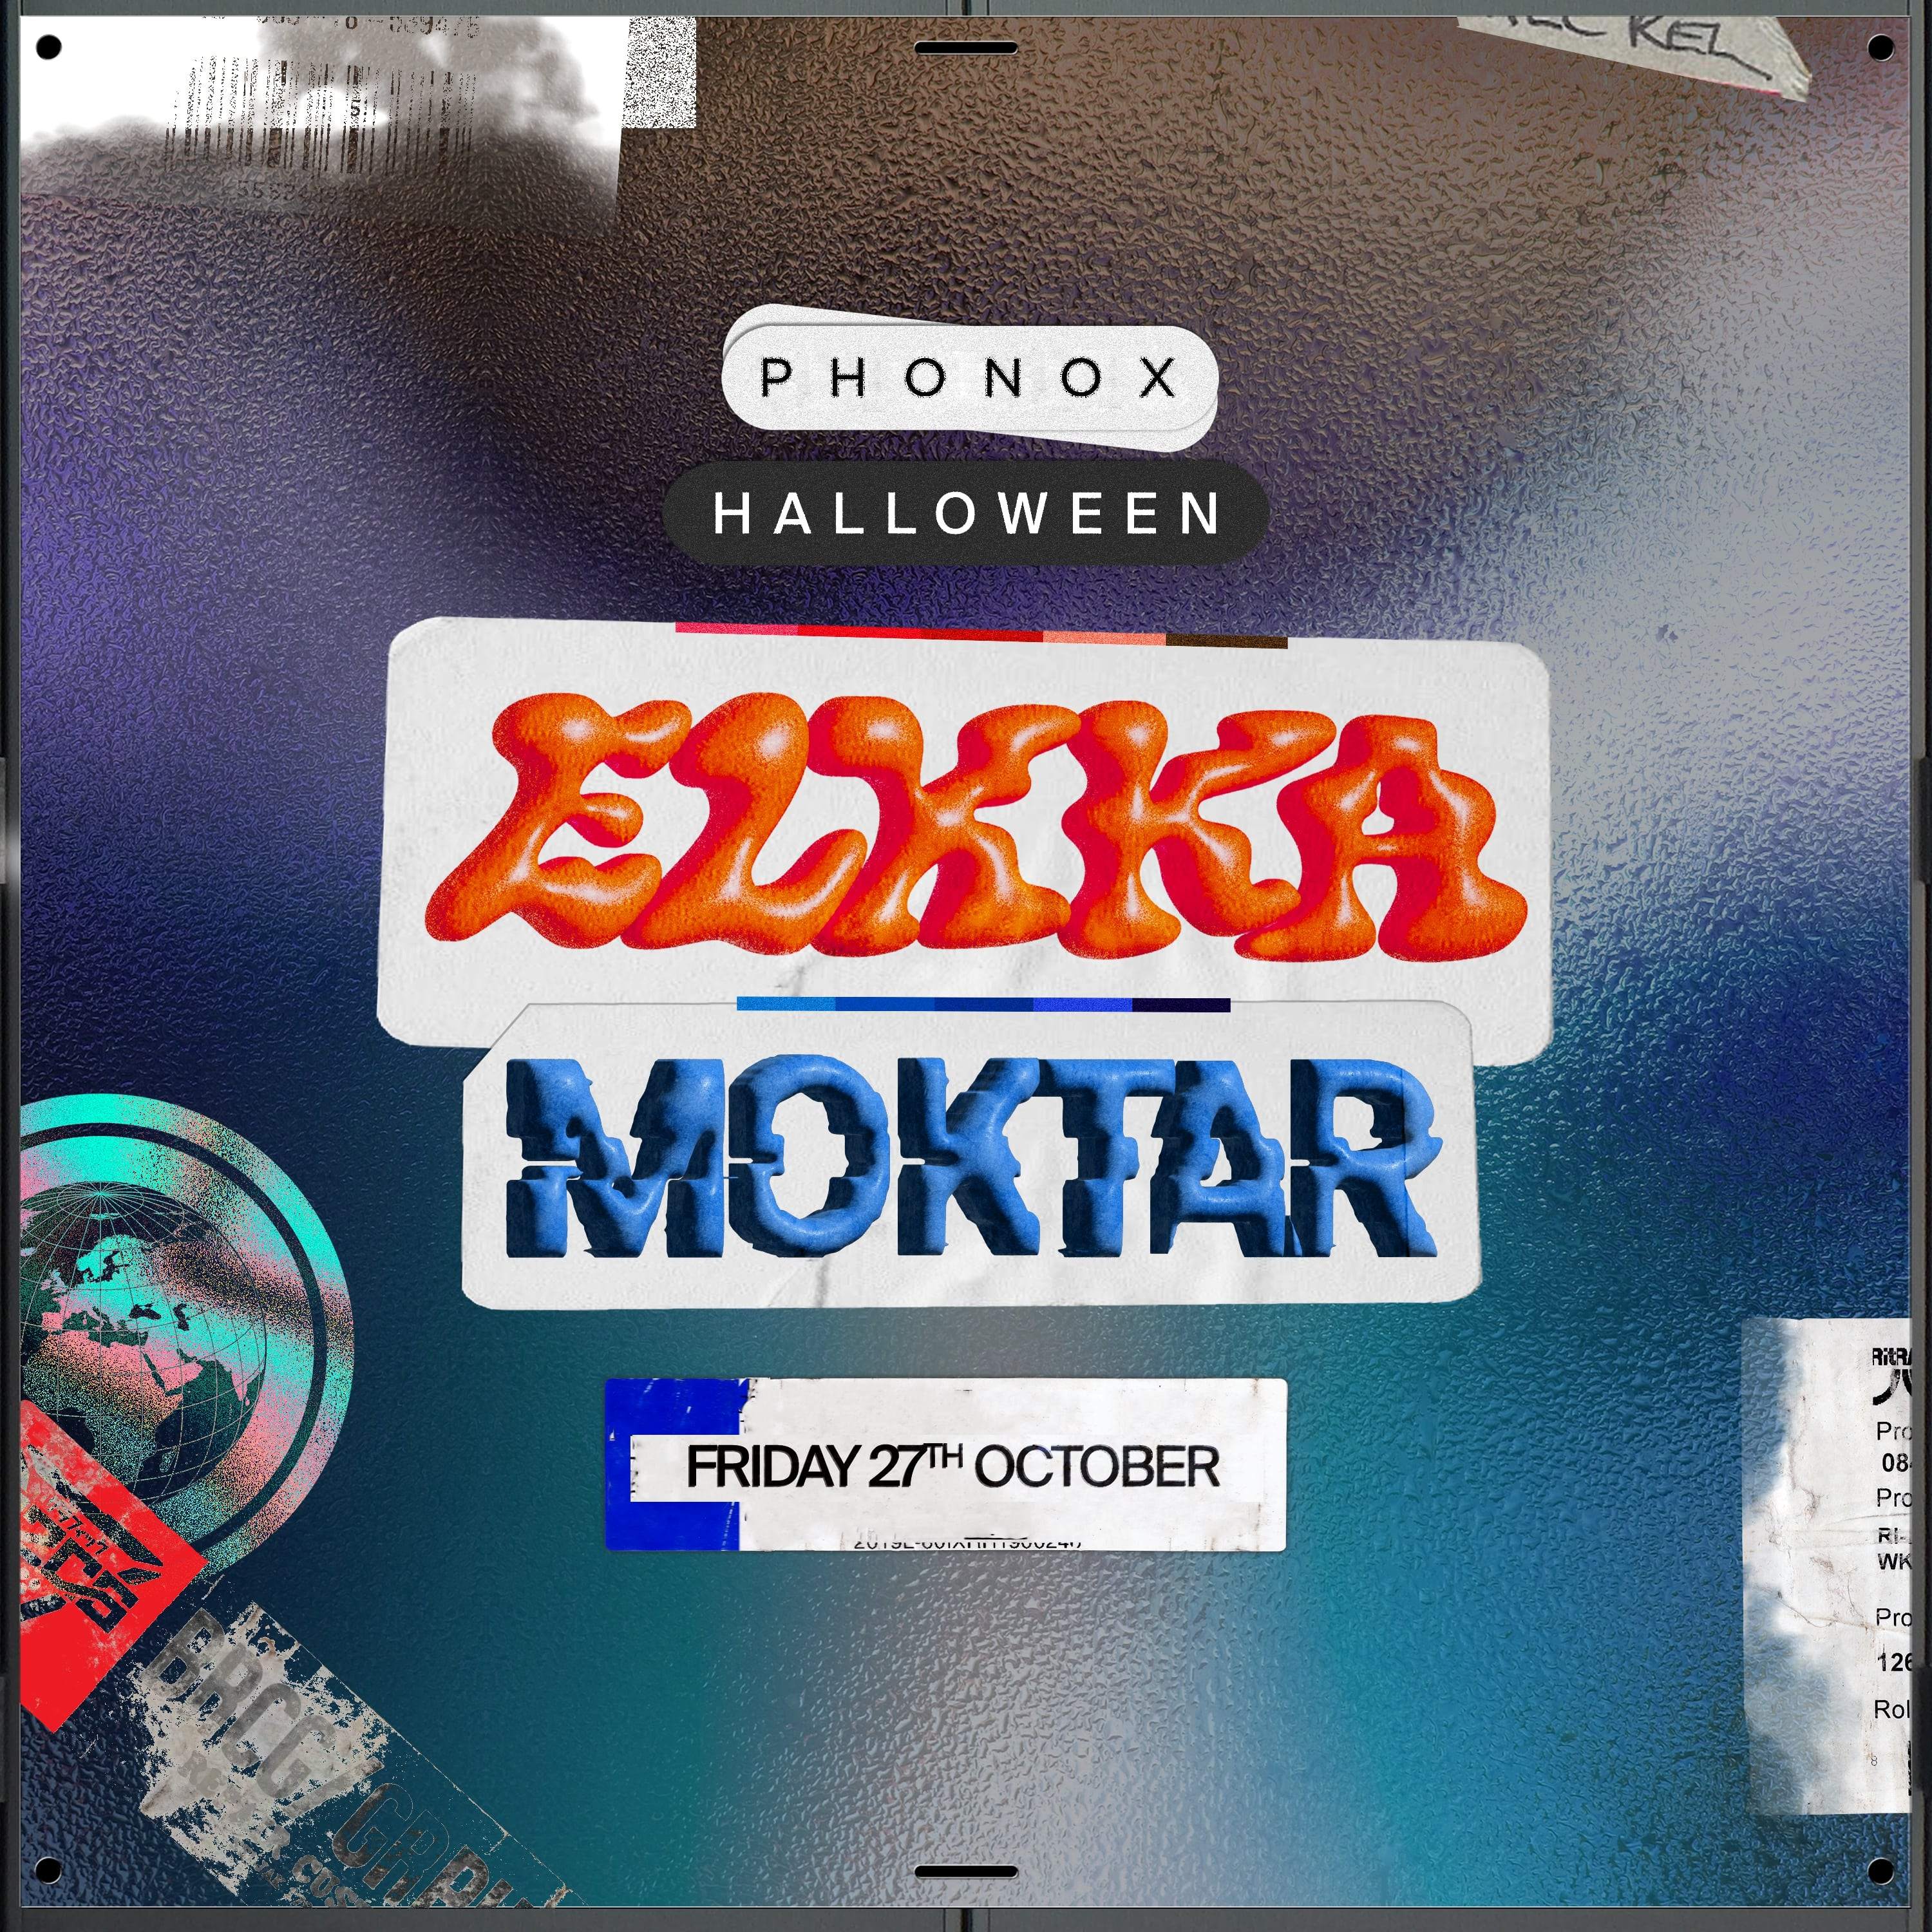 Elkka & Moktar (Phonox Halloween) - Página frontal